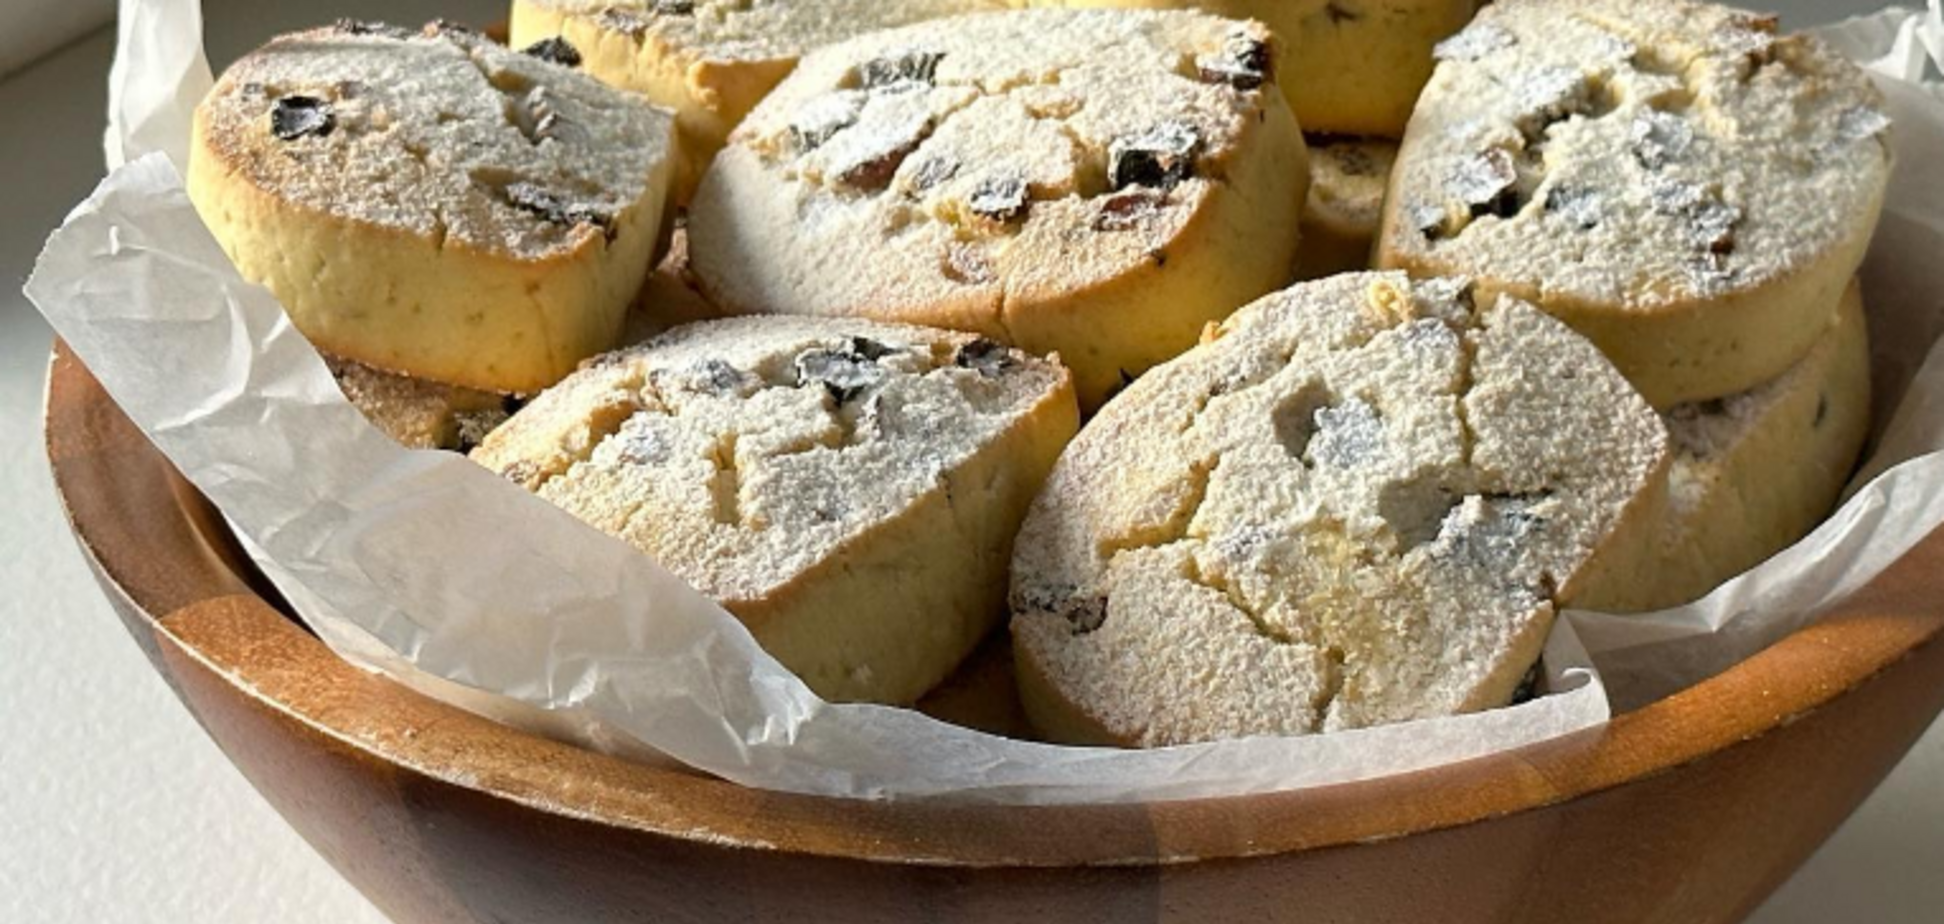 Пісочне печиво 'Поліно' з родзинками: рецепт домашньої випічки з дитинства